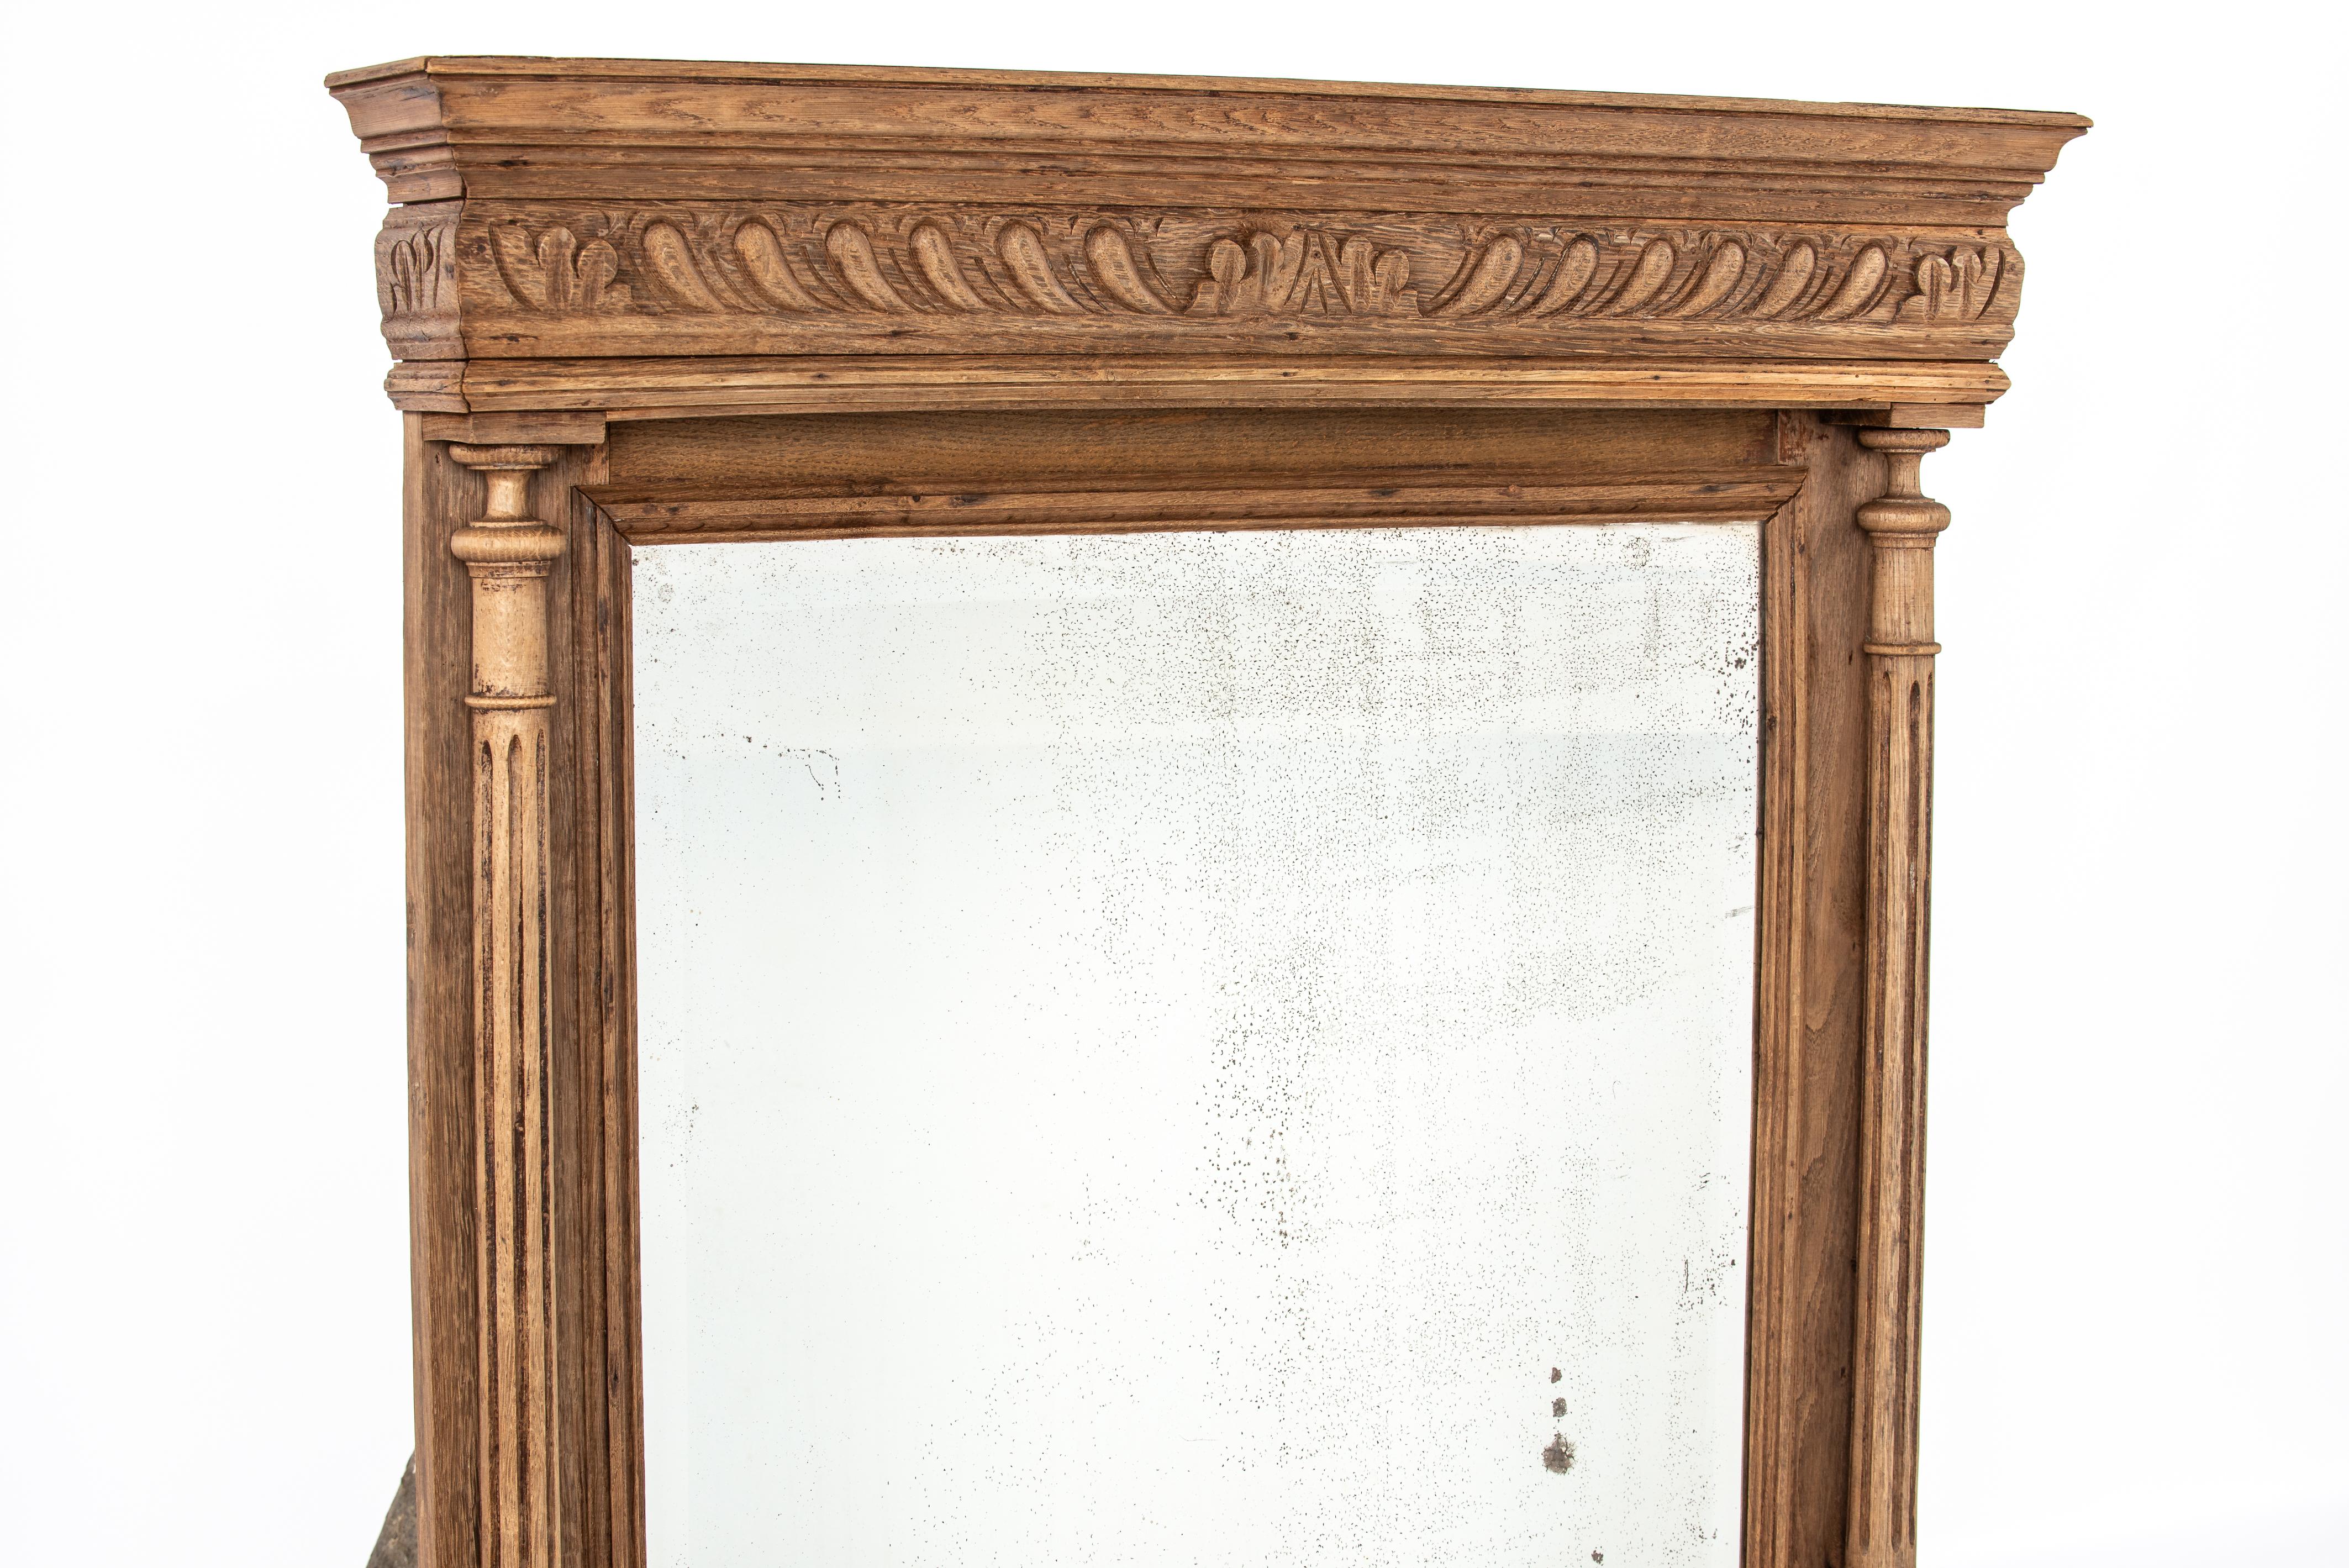 Nous vous proposons ici un miroir ancien Henri Deux en chêne massif, fabriqué dans le nord de la France au début du 20e siècle. Elle était décorée de façon élaborée avec deux belles colonnes tournées flanquant la vitre. Au-dessus d'une frise à